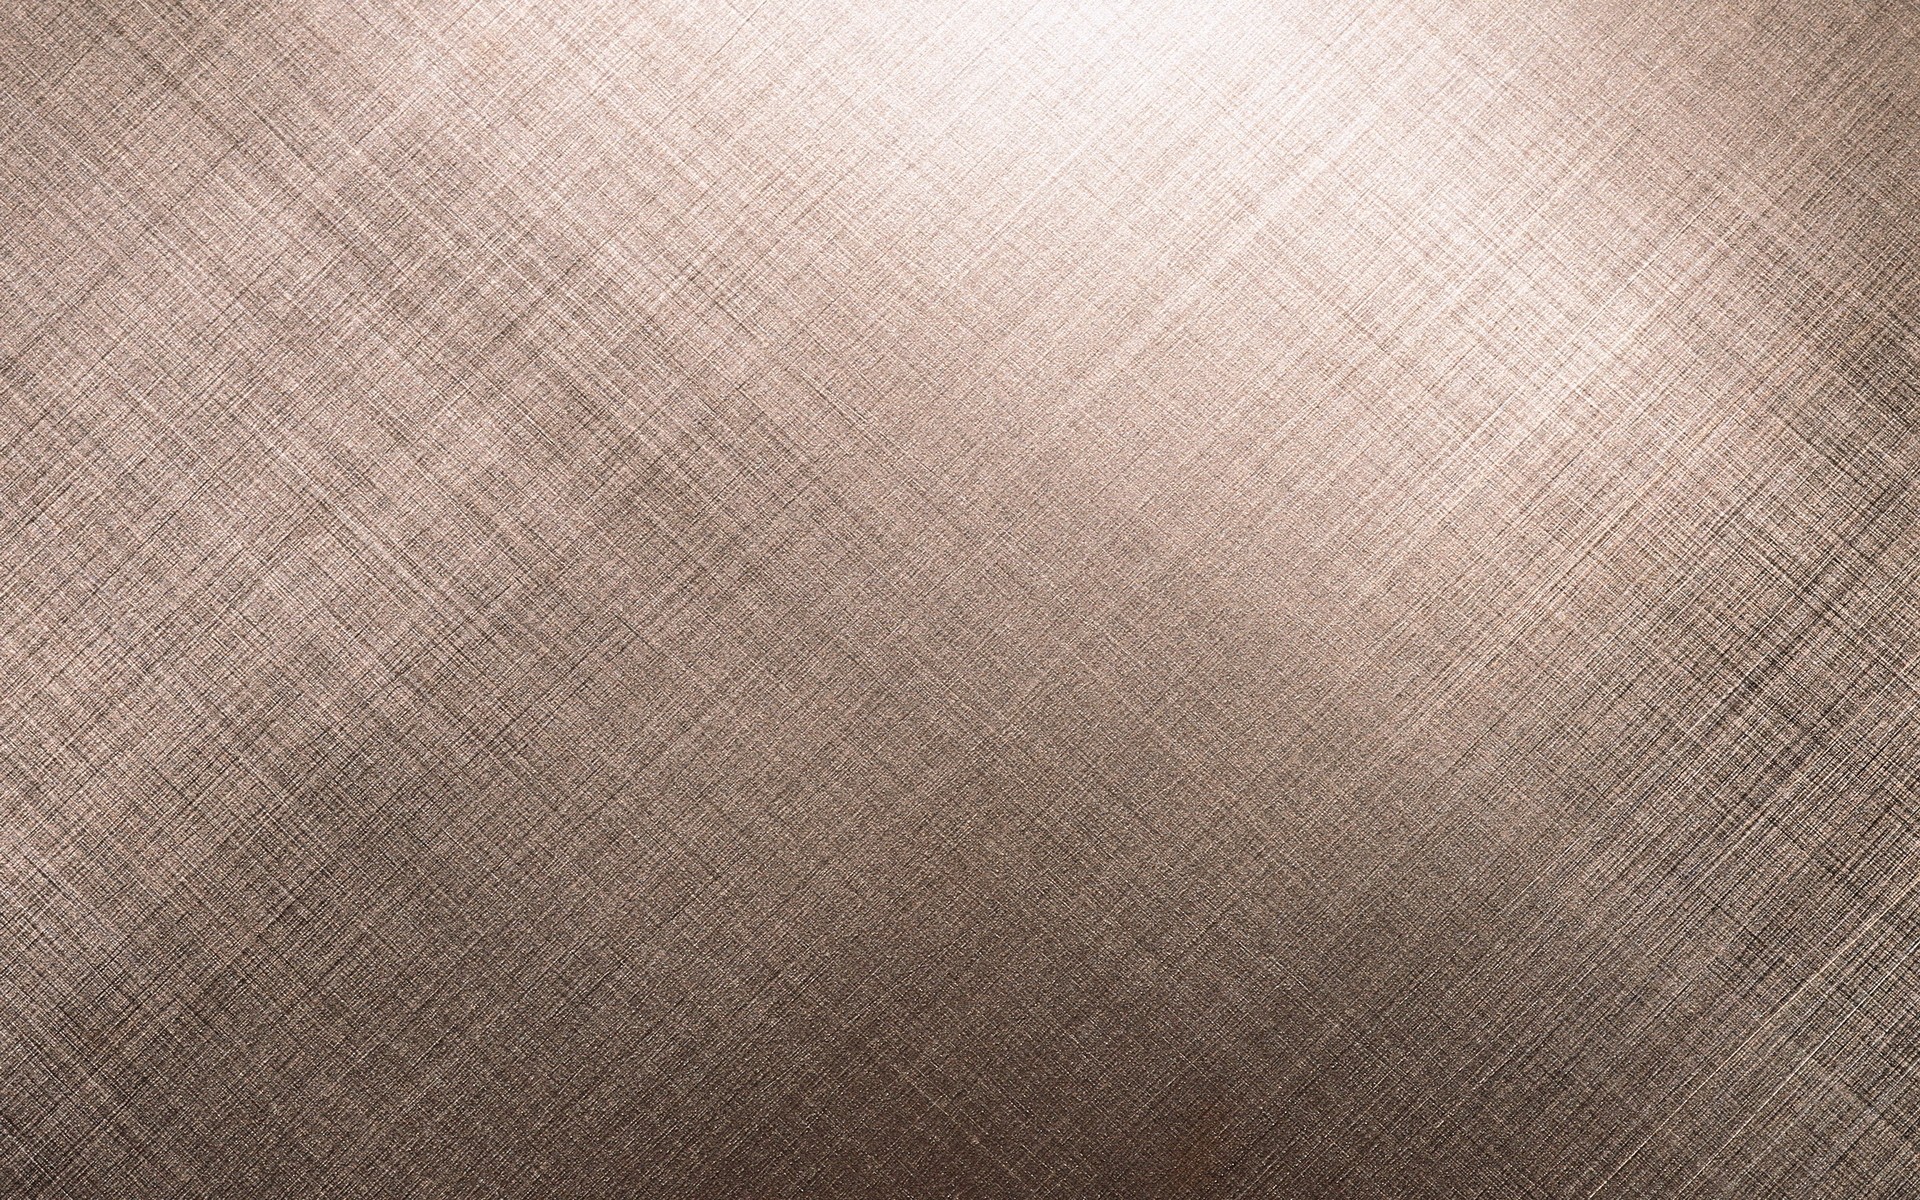 패브릭 질감 벽지,갈색,베이지,무늬,바닥,리넨